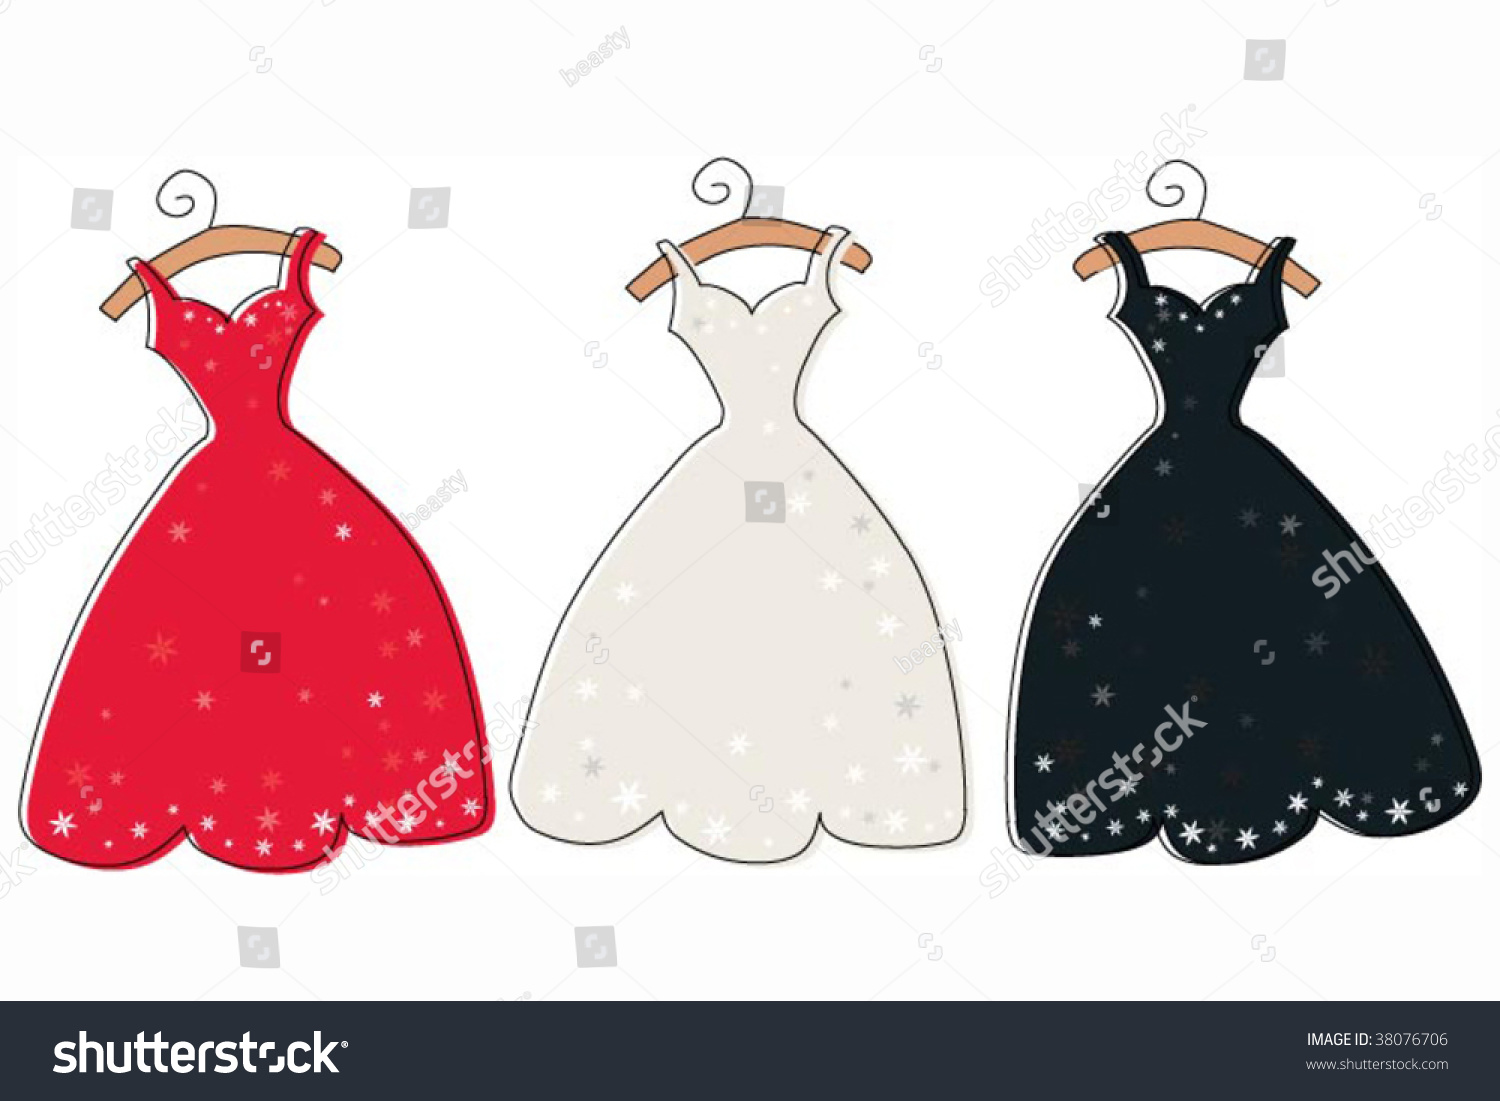 Vector Glamour Dresses - 38076706 : Shutterstock